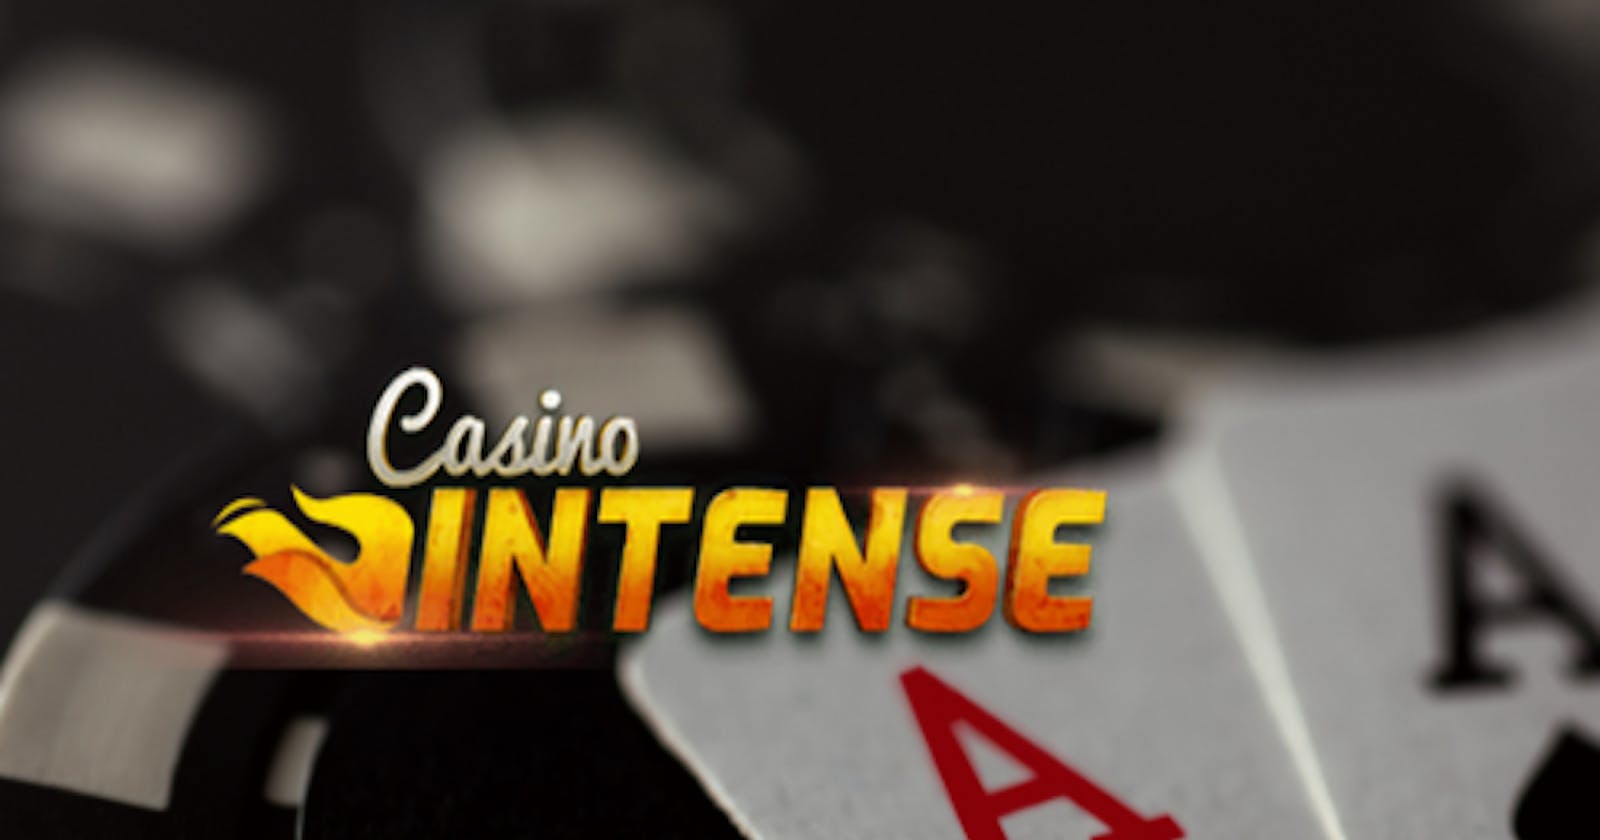 Intense Casino - Revue de presse